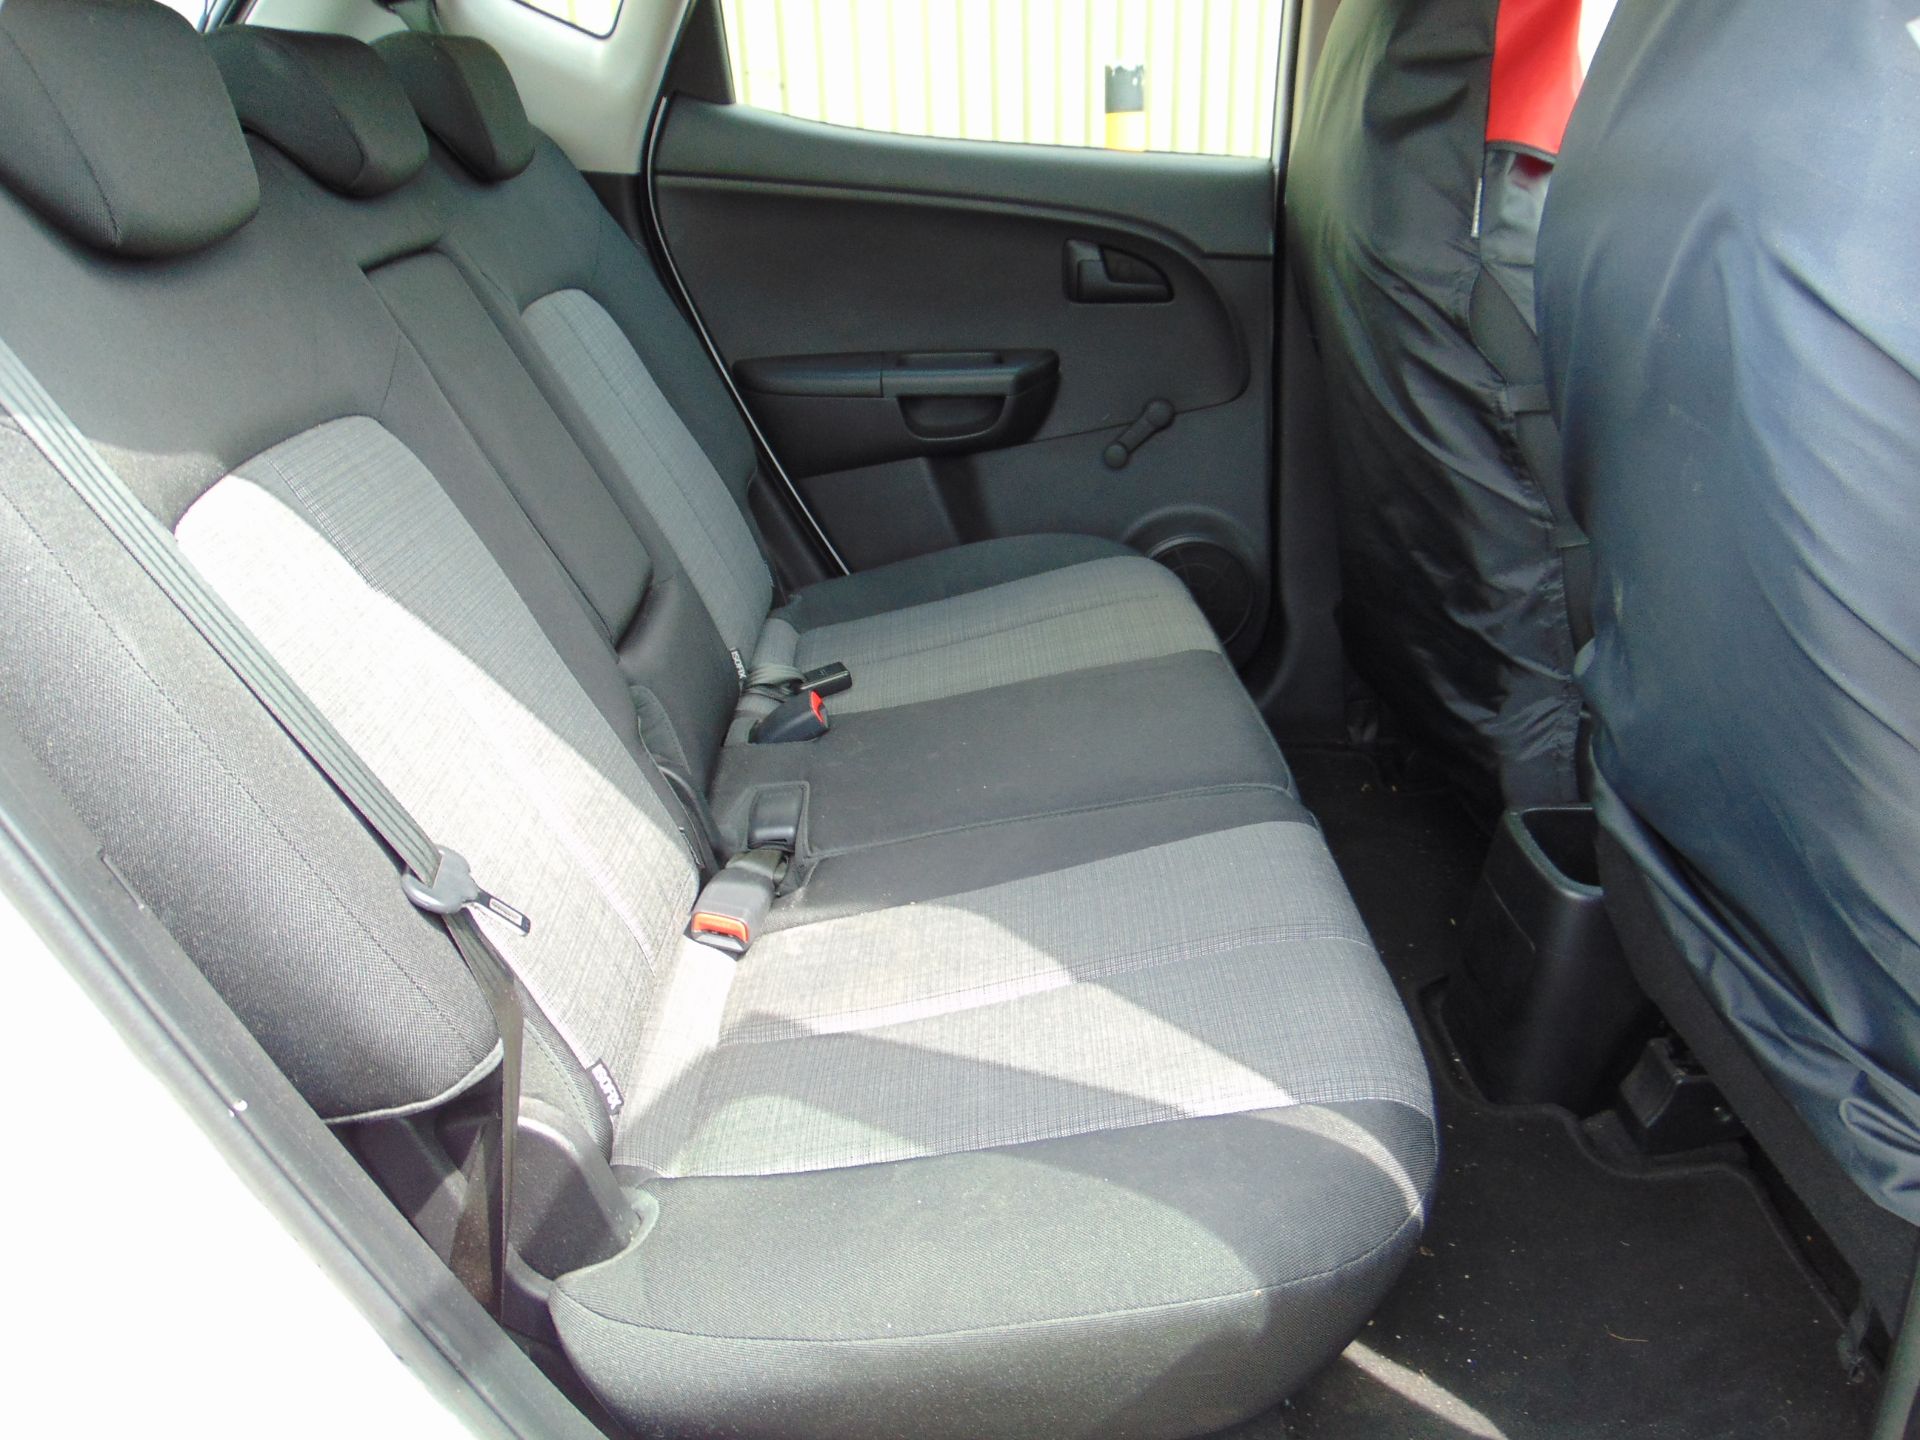 2011 Kia Venga EcoDynamics 1.4 CRDi 5 Door Diesel Hatchback Only 52,622 Miles! *NO VAT / NO PREMIUM* - Image 16 of 20